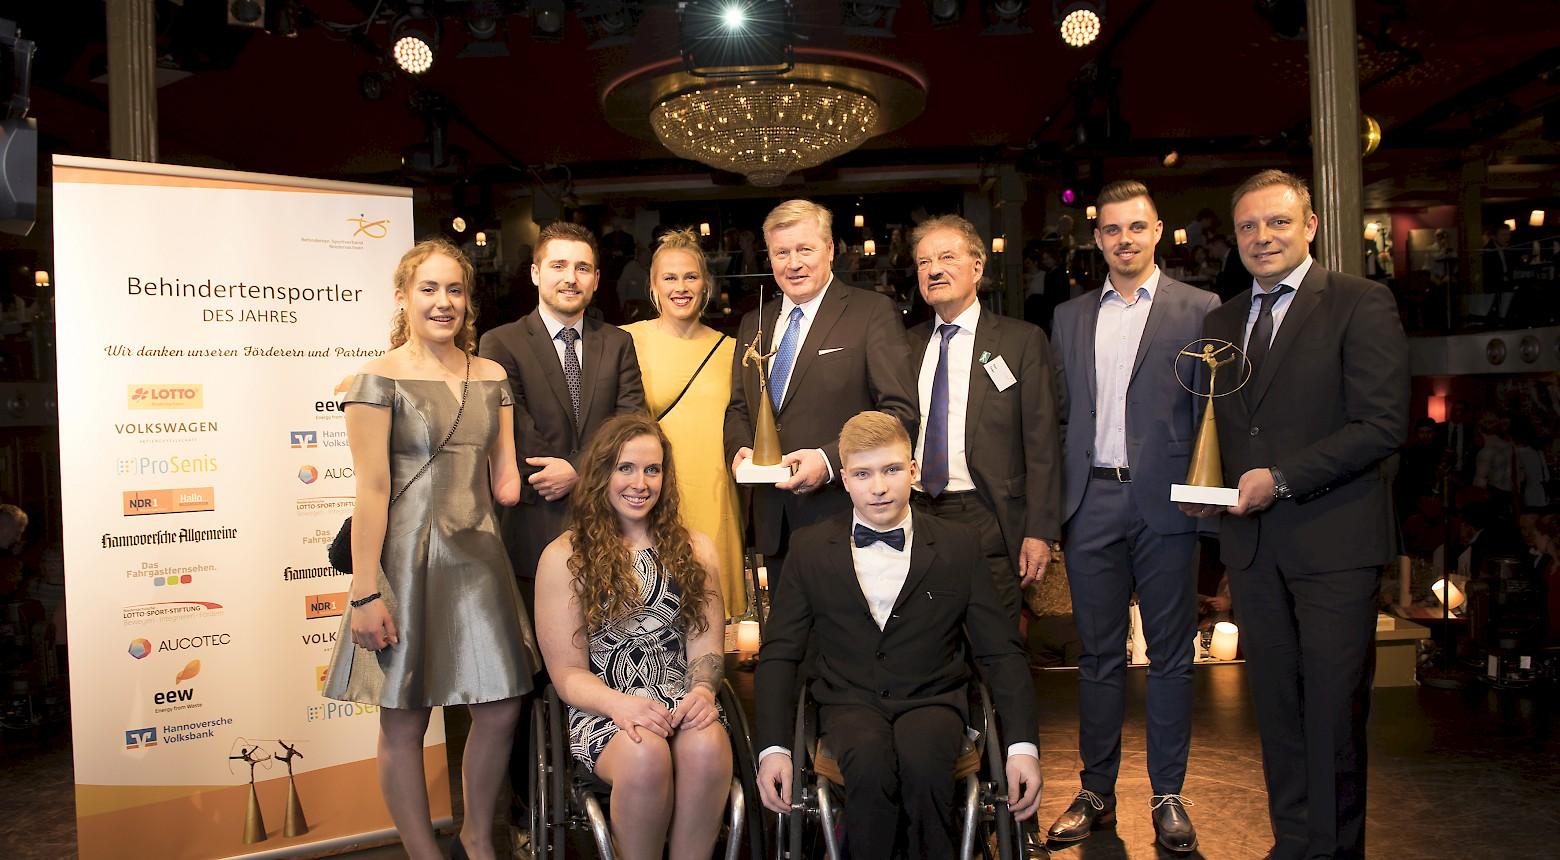 Behindertensportler des Jahres - VUN gratuliert den Gewinnern